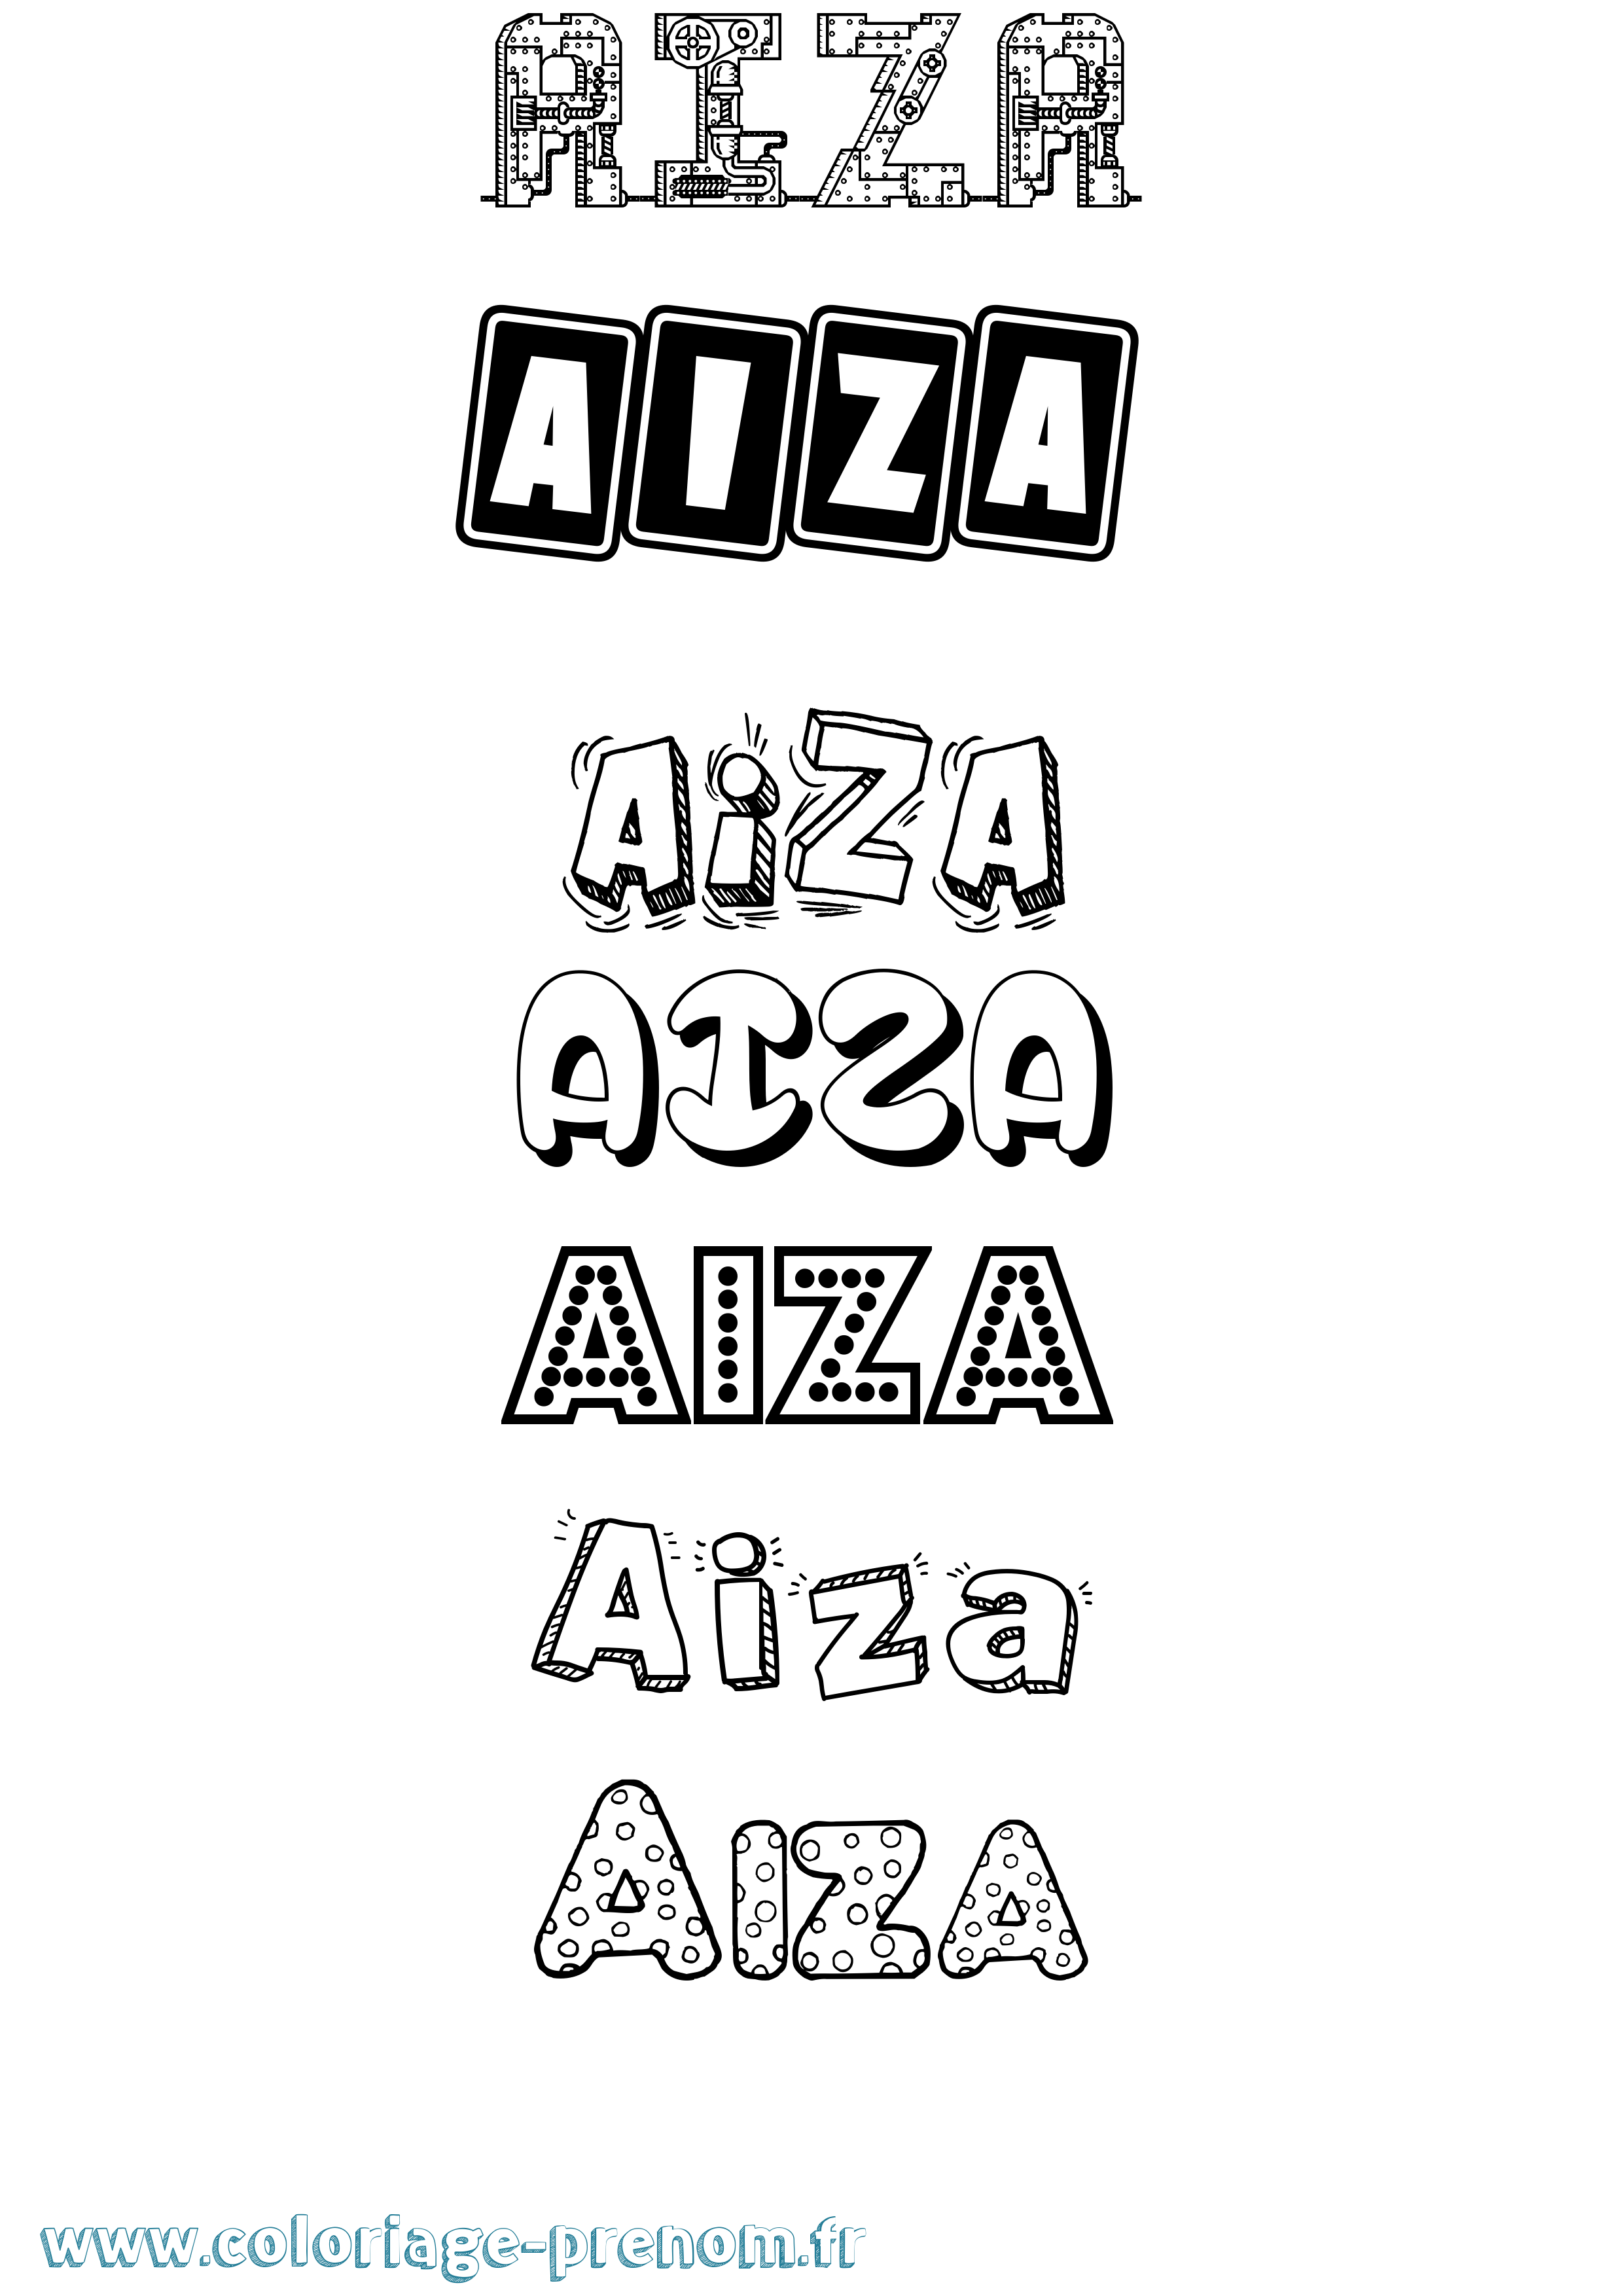 Coloriage prénom Aiza Fun